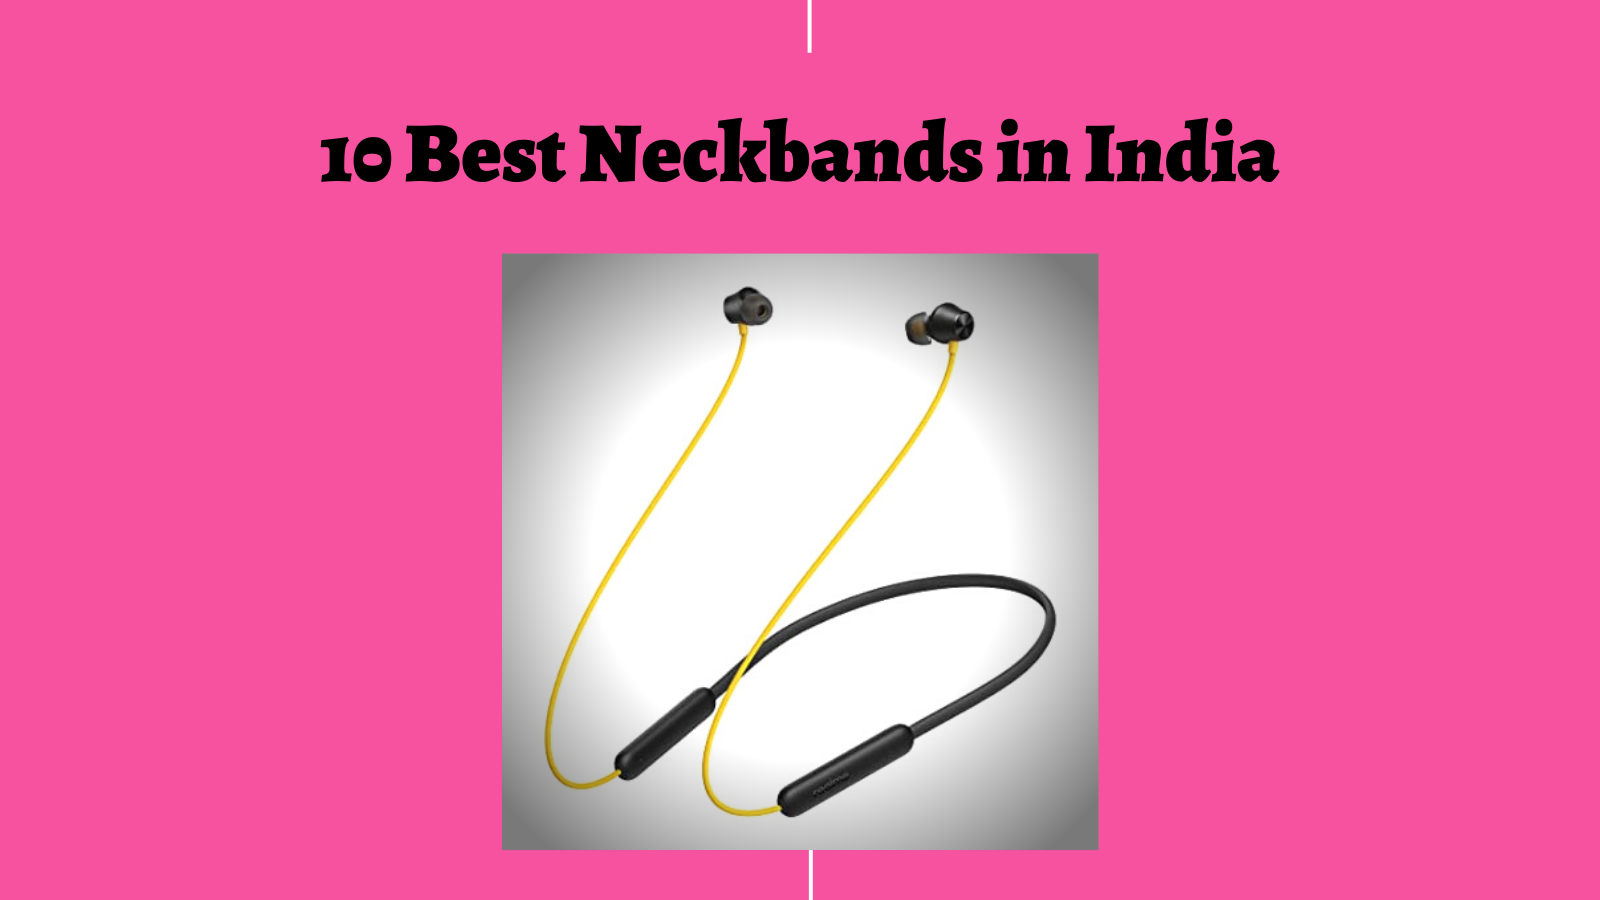 10 Best Neckbands in India